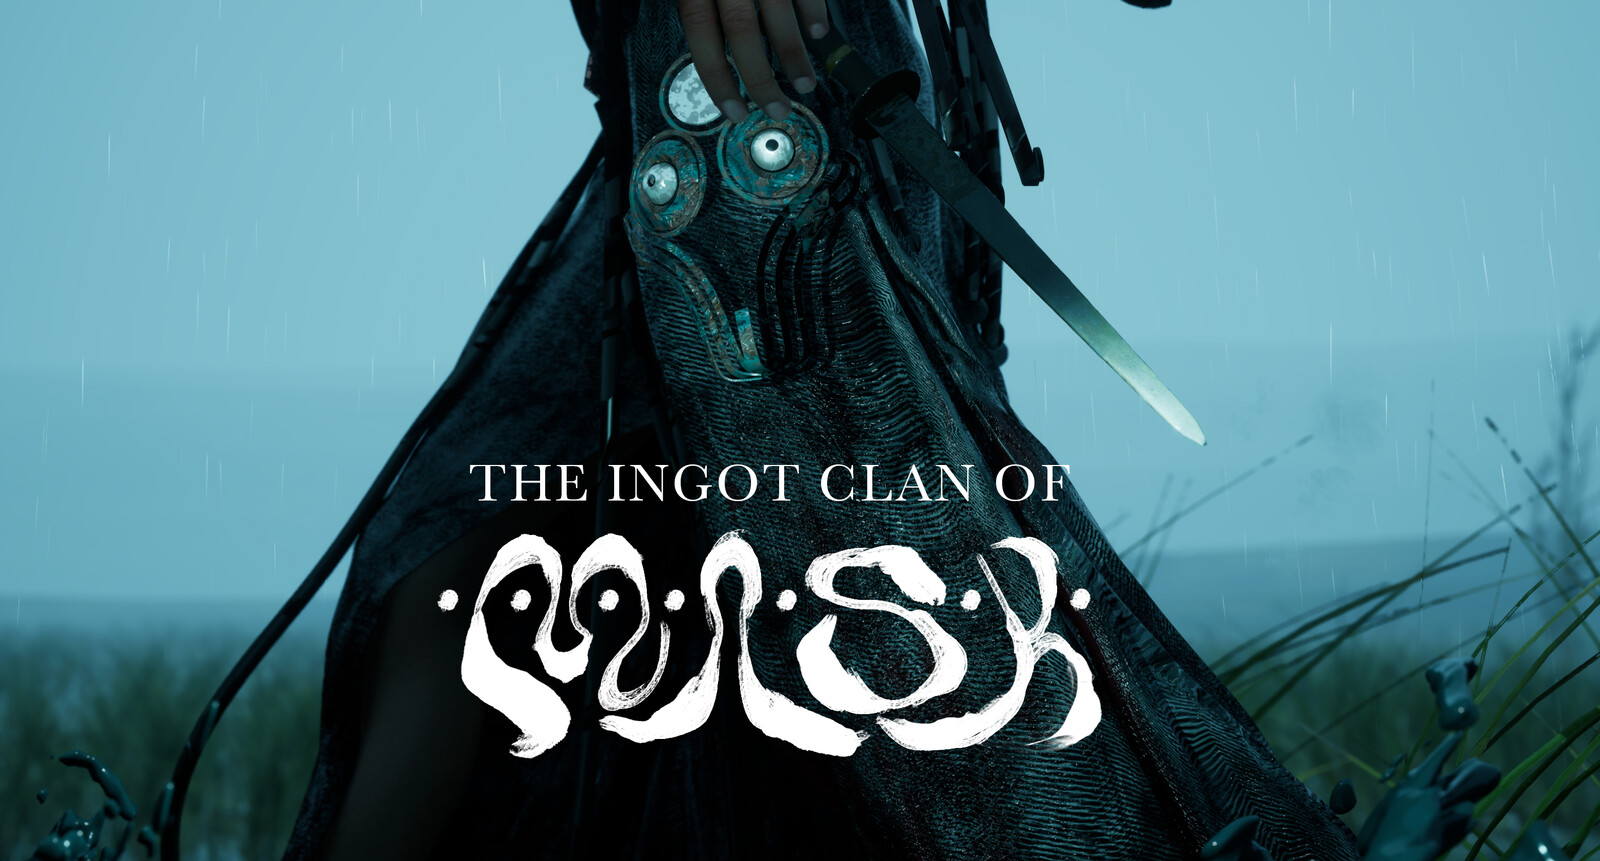 The Ingot Clan of Mask